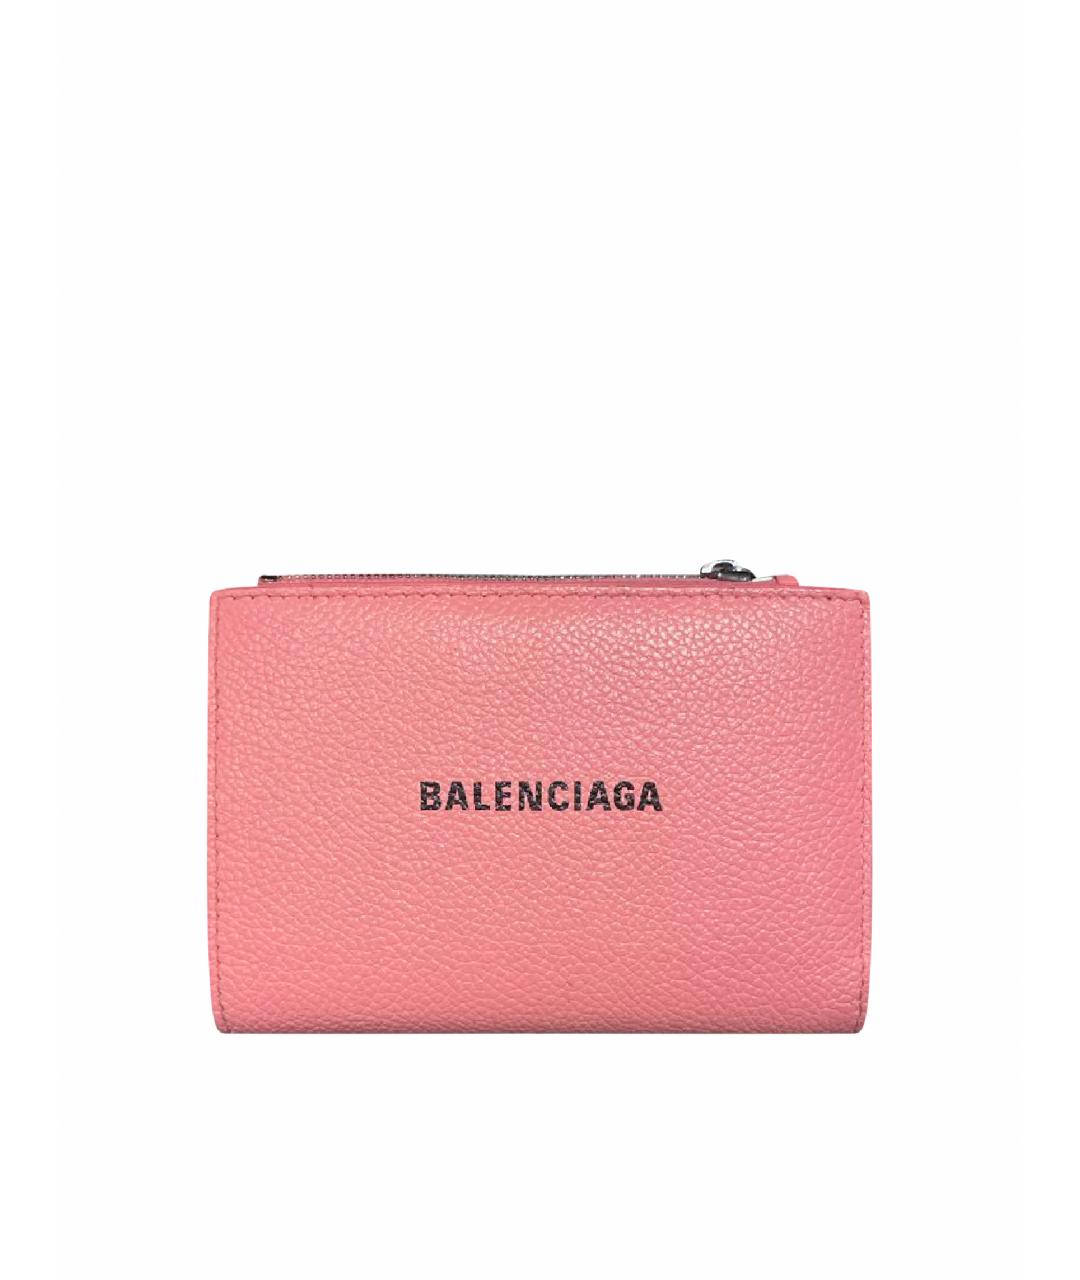 BALENCIAGA Розовый кожаный кошелек, фото 1